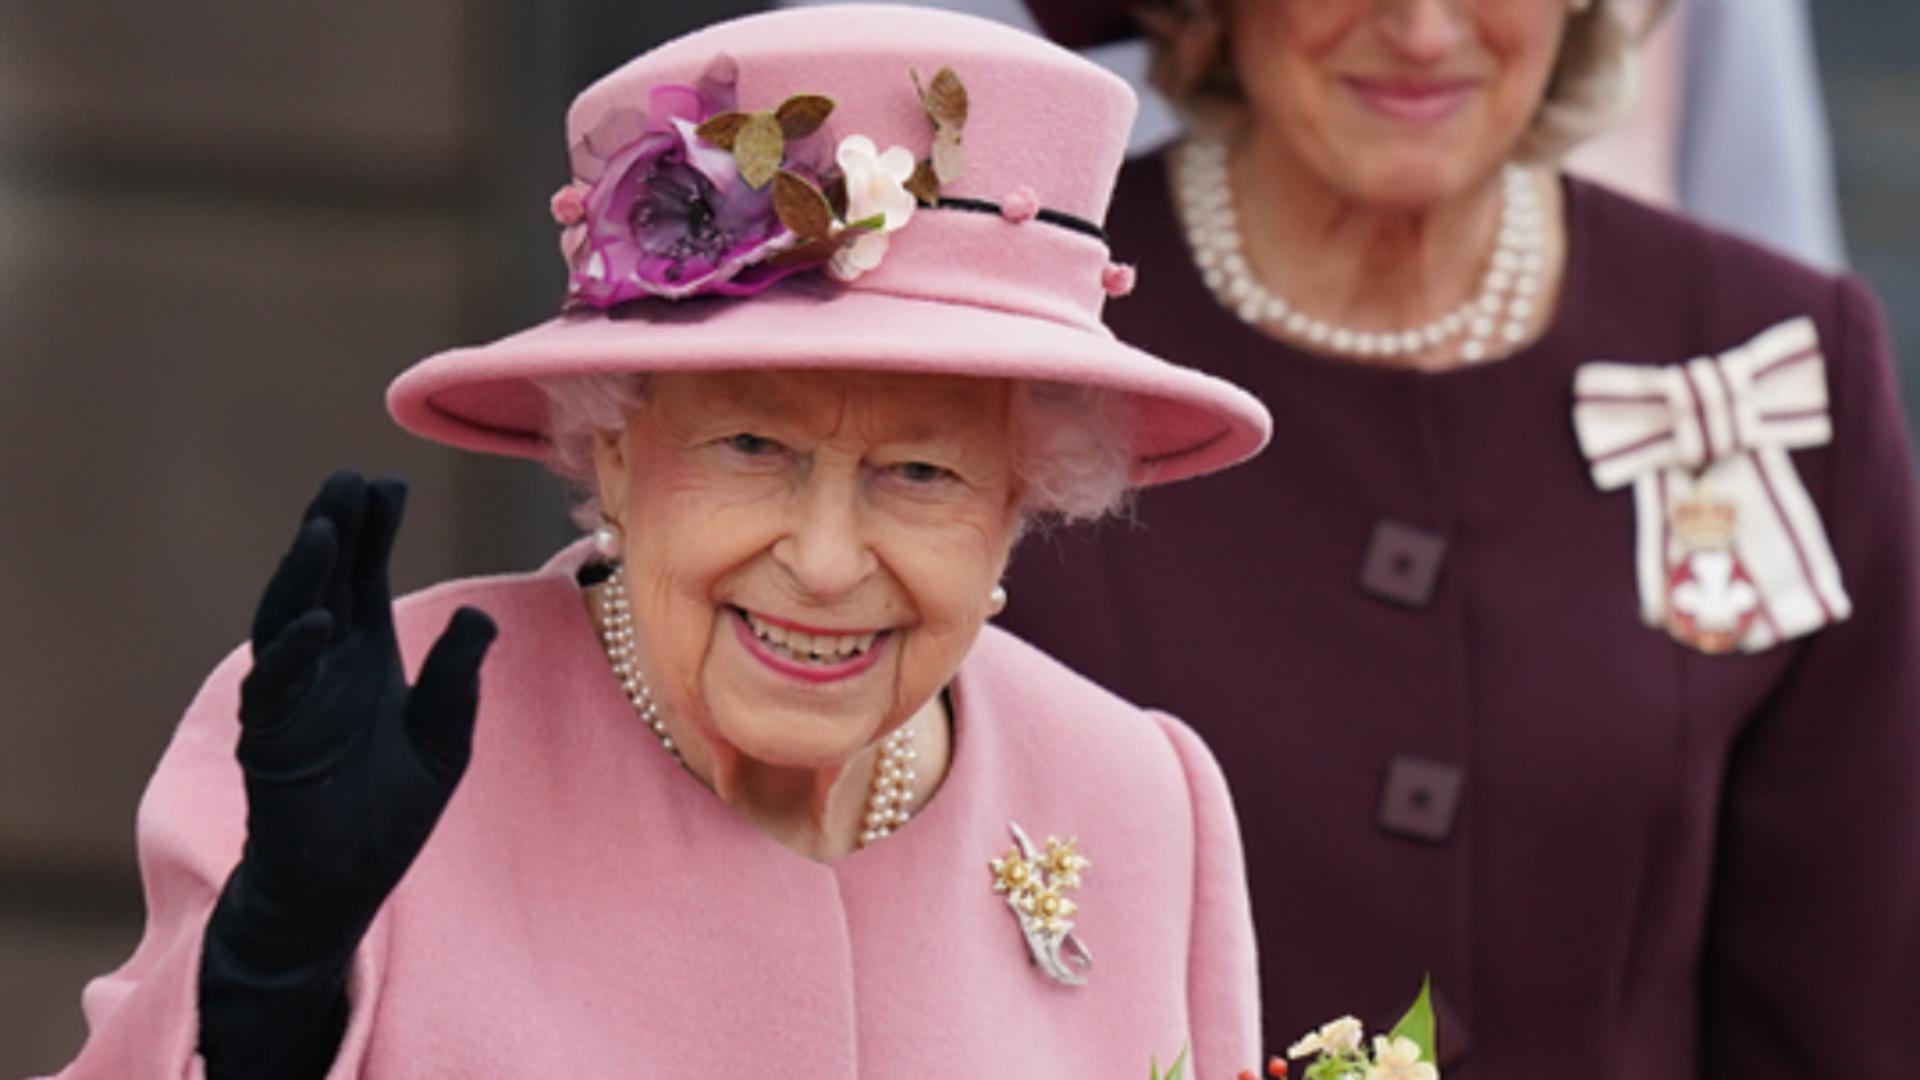 Regina Elisabeta a II-a, Regatul Unit al Marii Britanii și Irlandei de Nord Foto: RoyalFamily